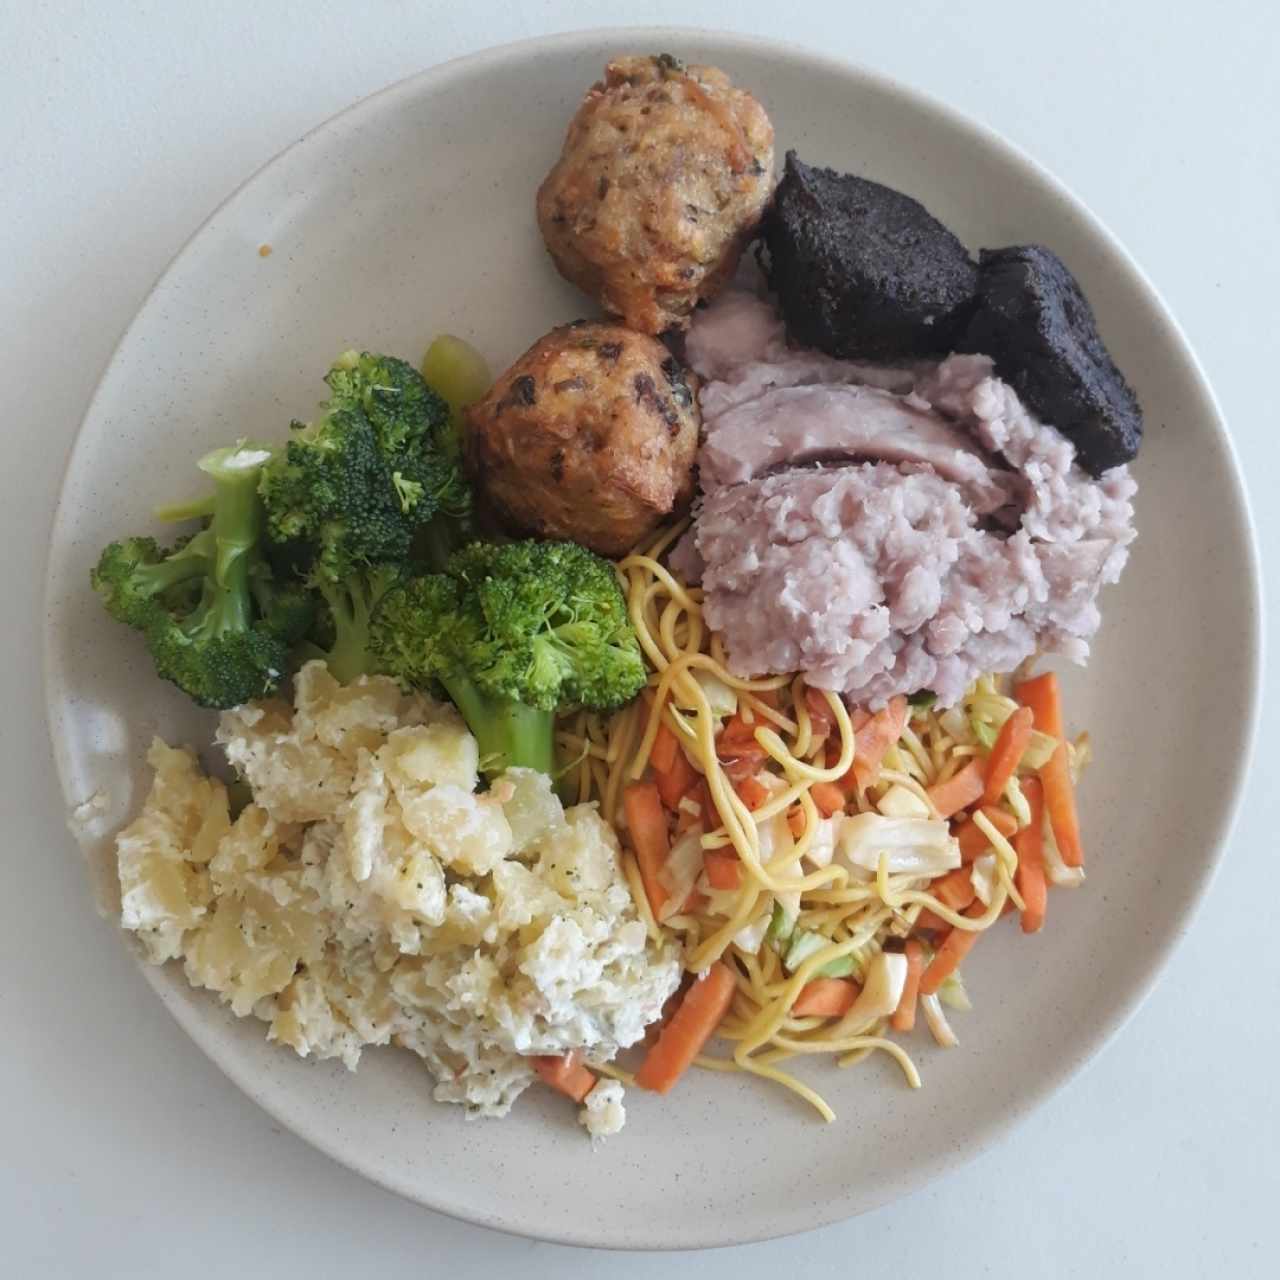 ensalada de papá, brócoli, bolitas de tofu con vegetales, hongos, puré de otoe, chow mein